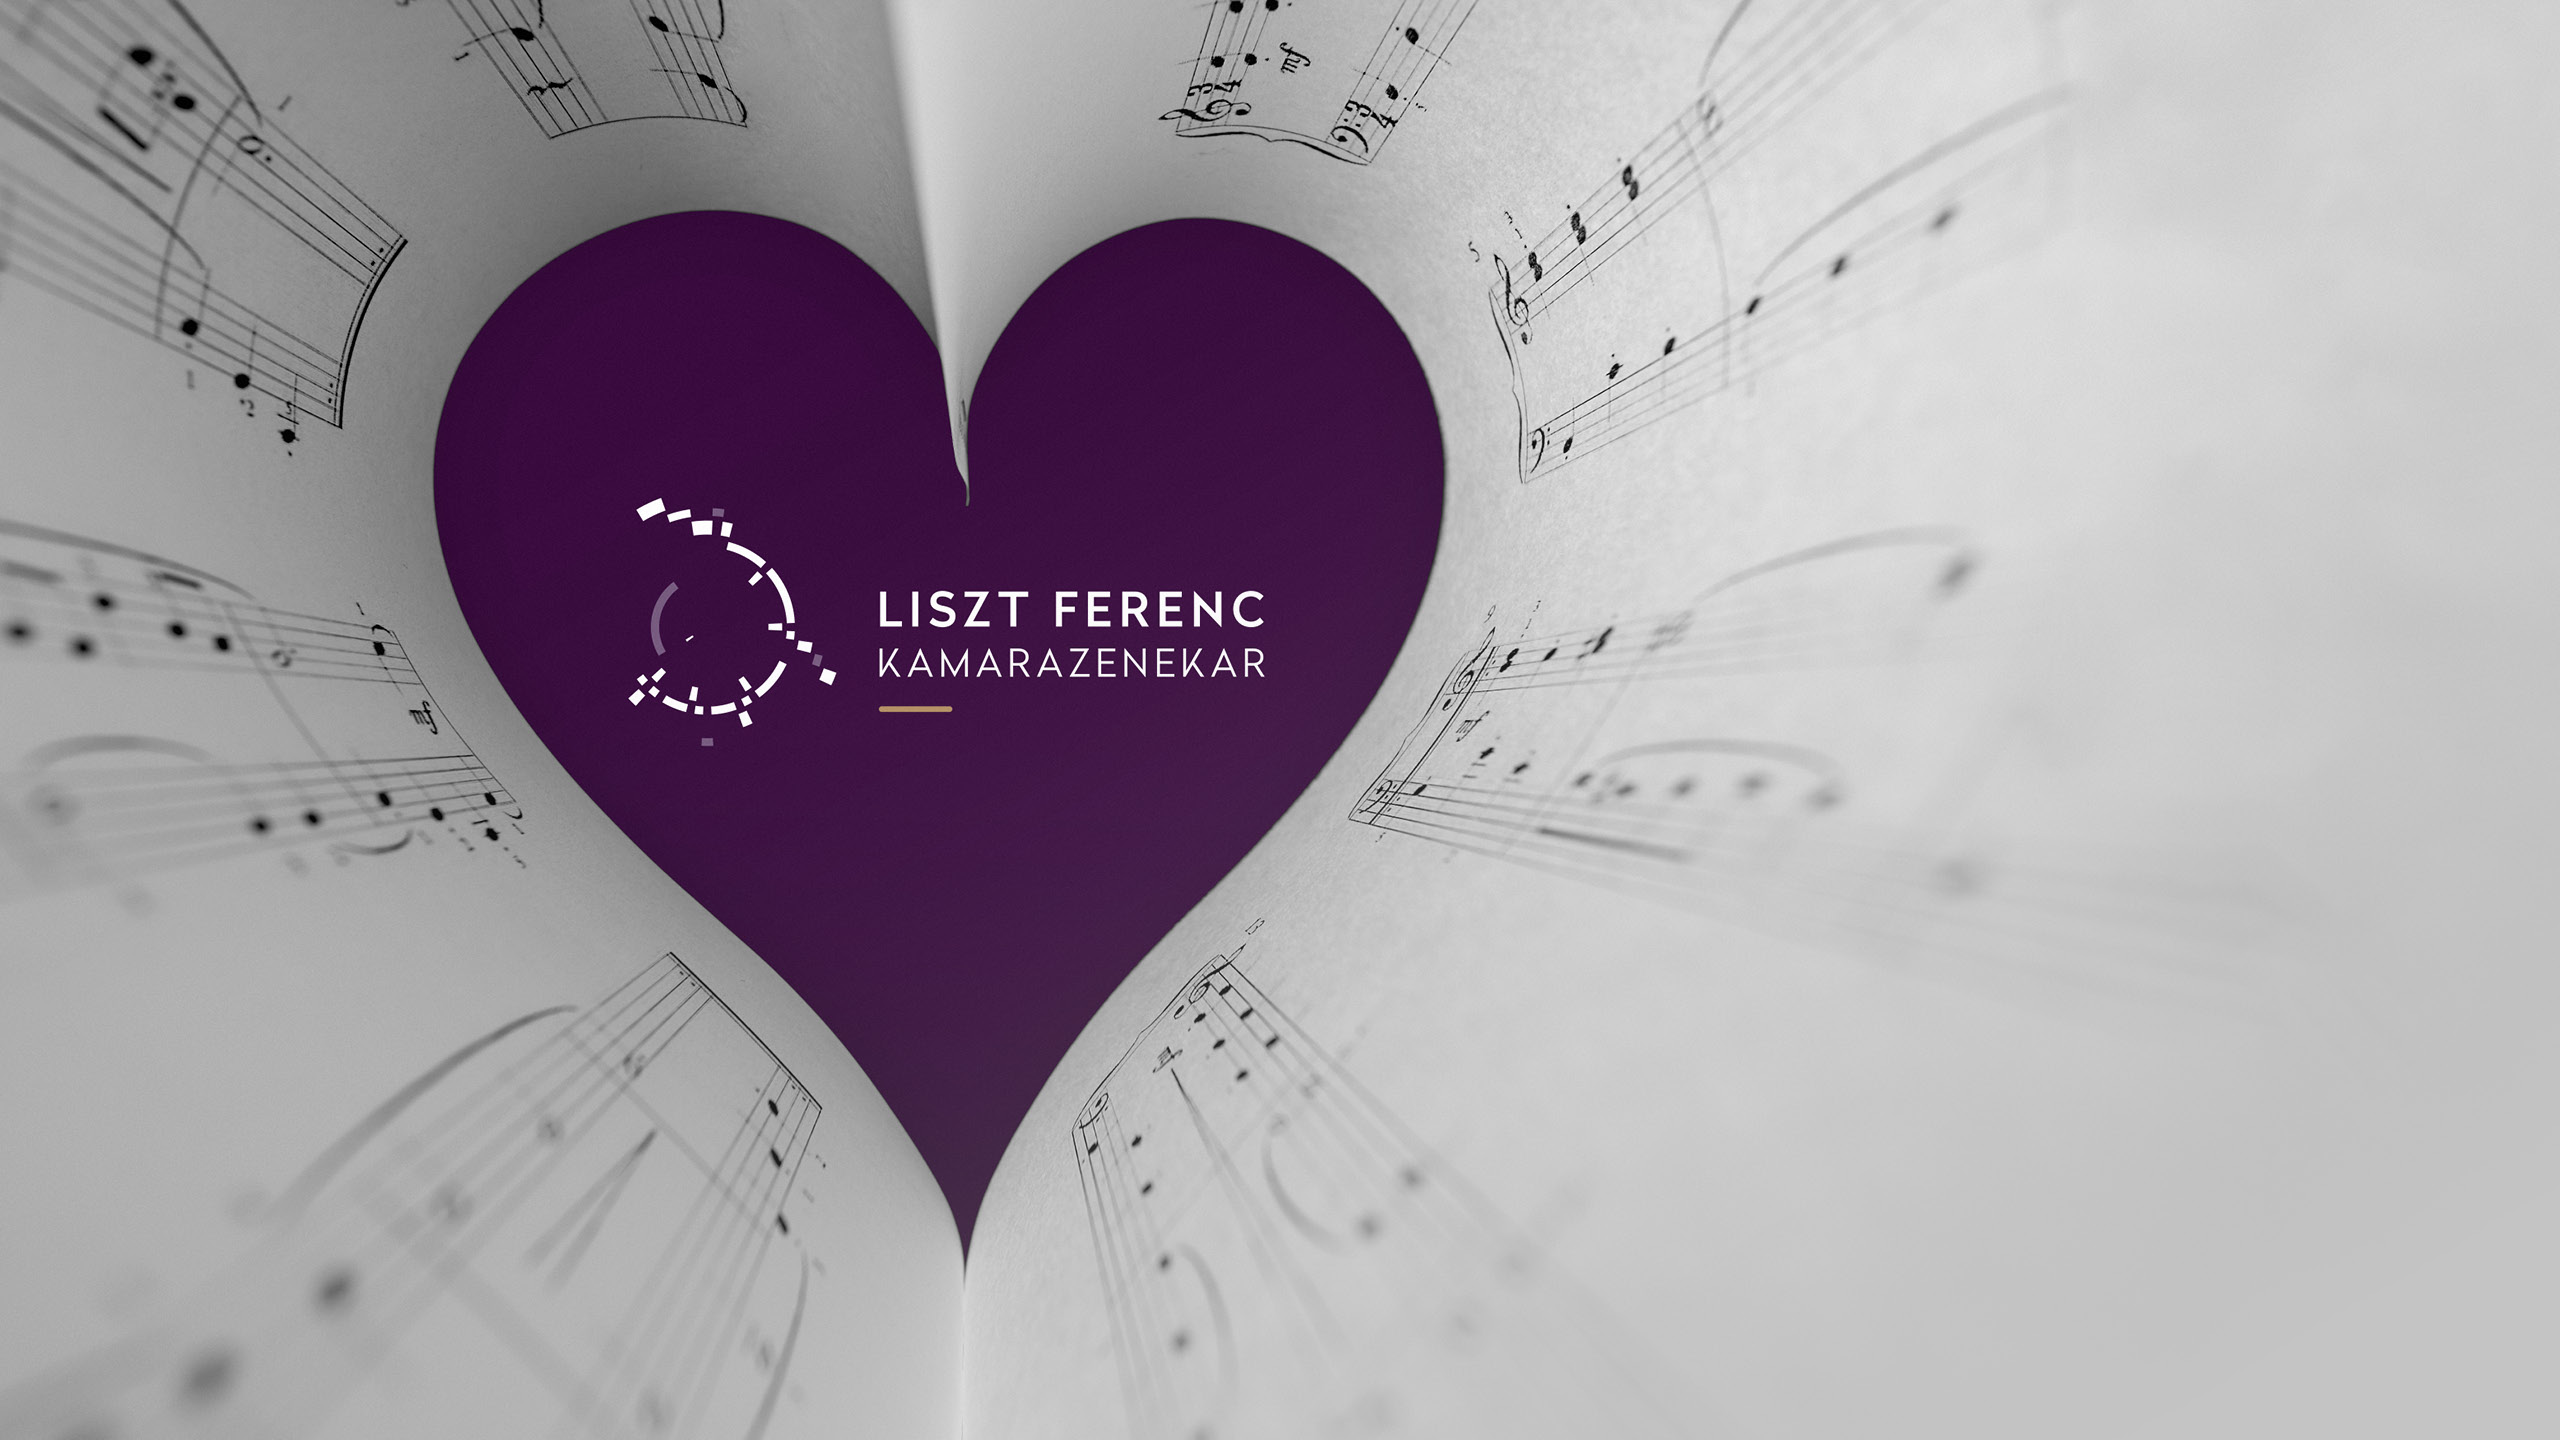 Valentin napi szerenádot ad egy szerencsés nyertesnek a Liszt Ferenc Kamarazenekar